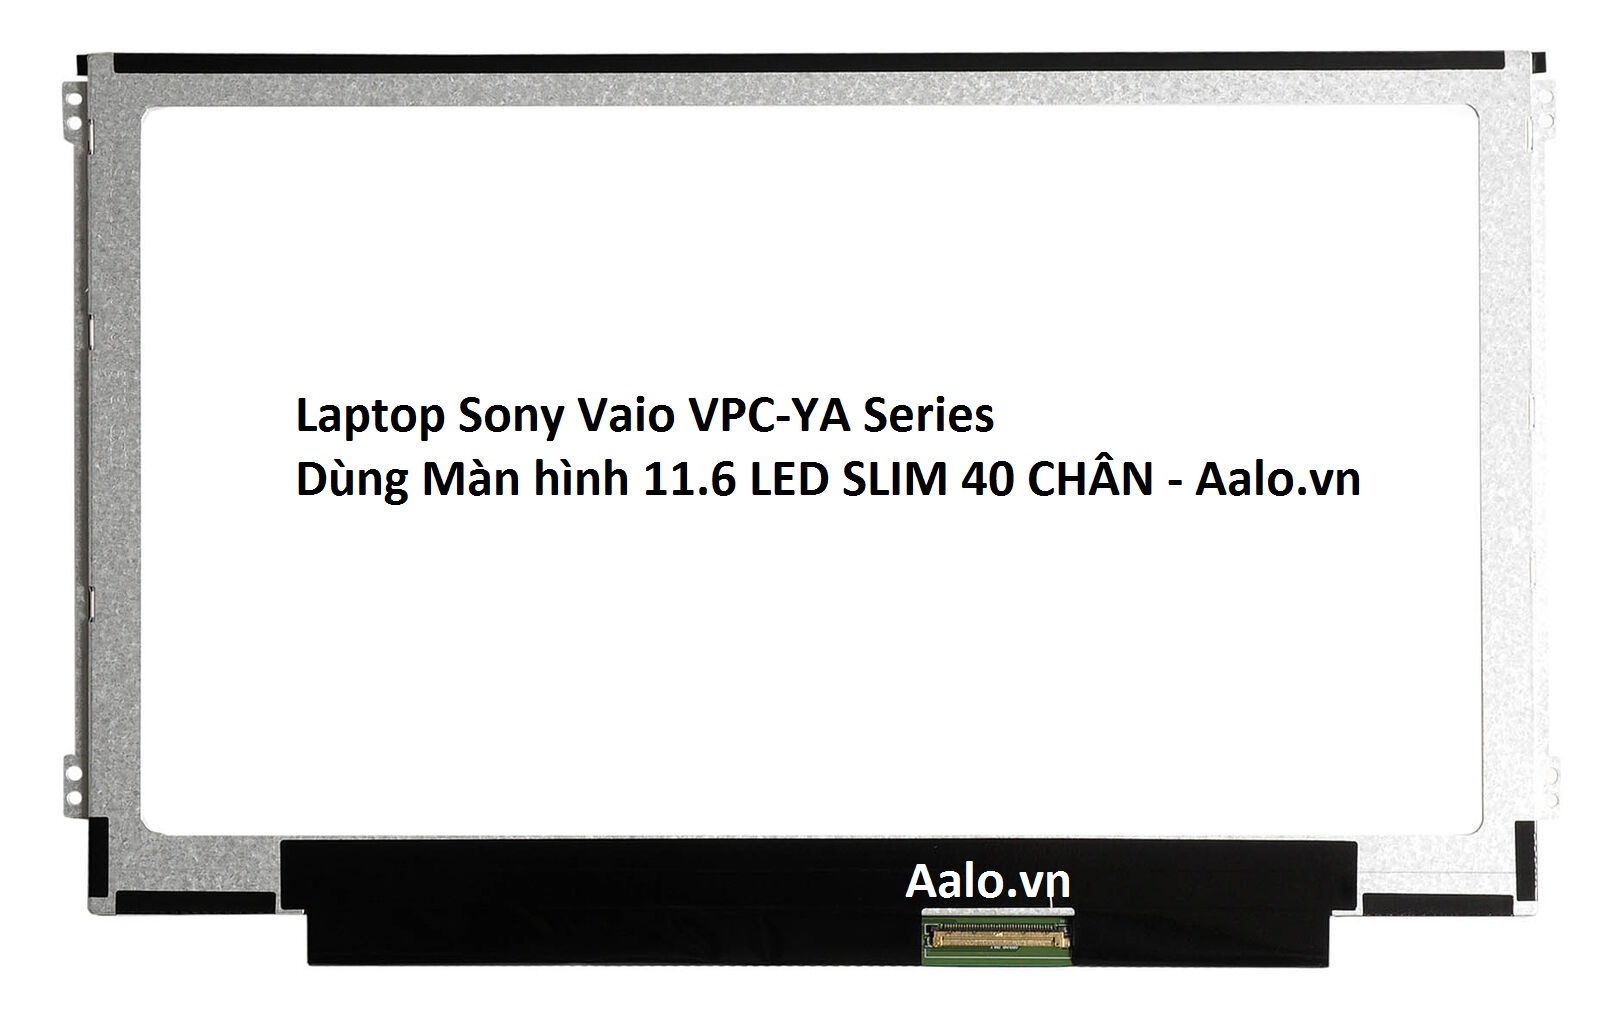 Màn hình Laptop Sony Vaio VPC-YA Series - Aalo.vn